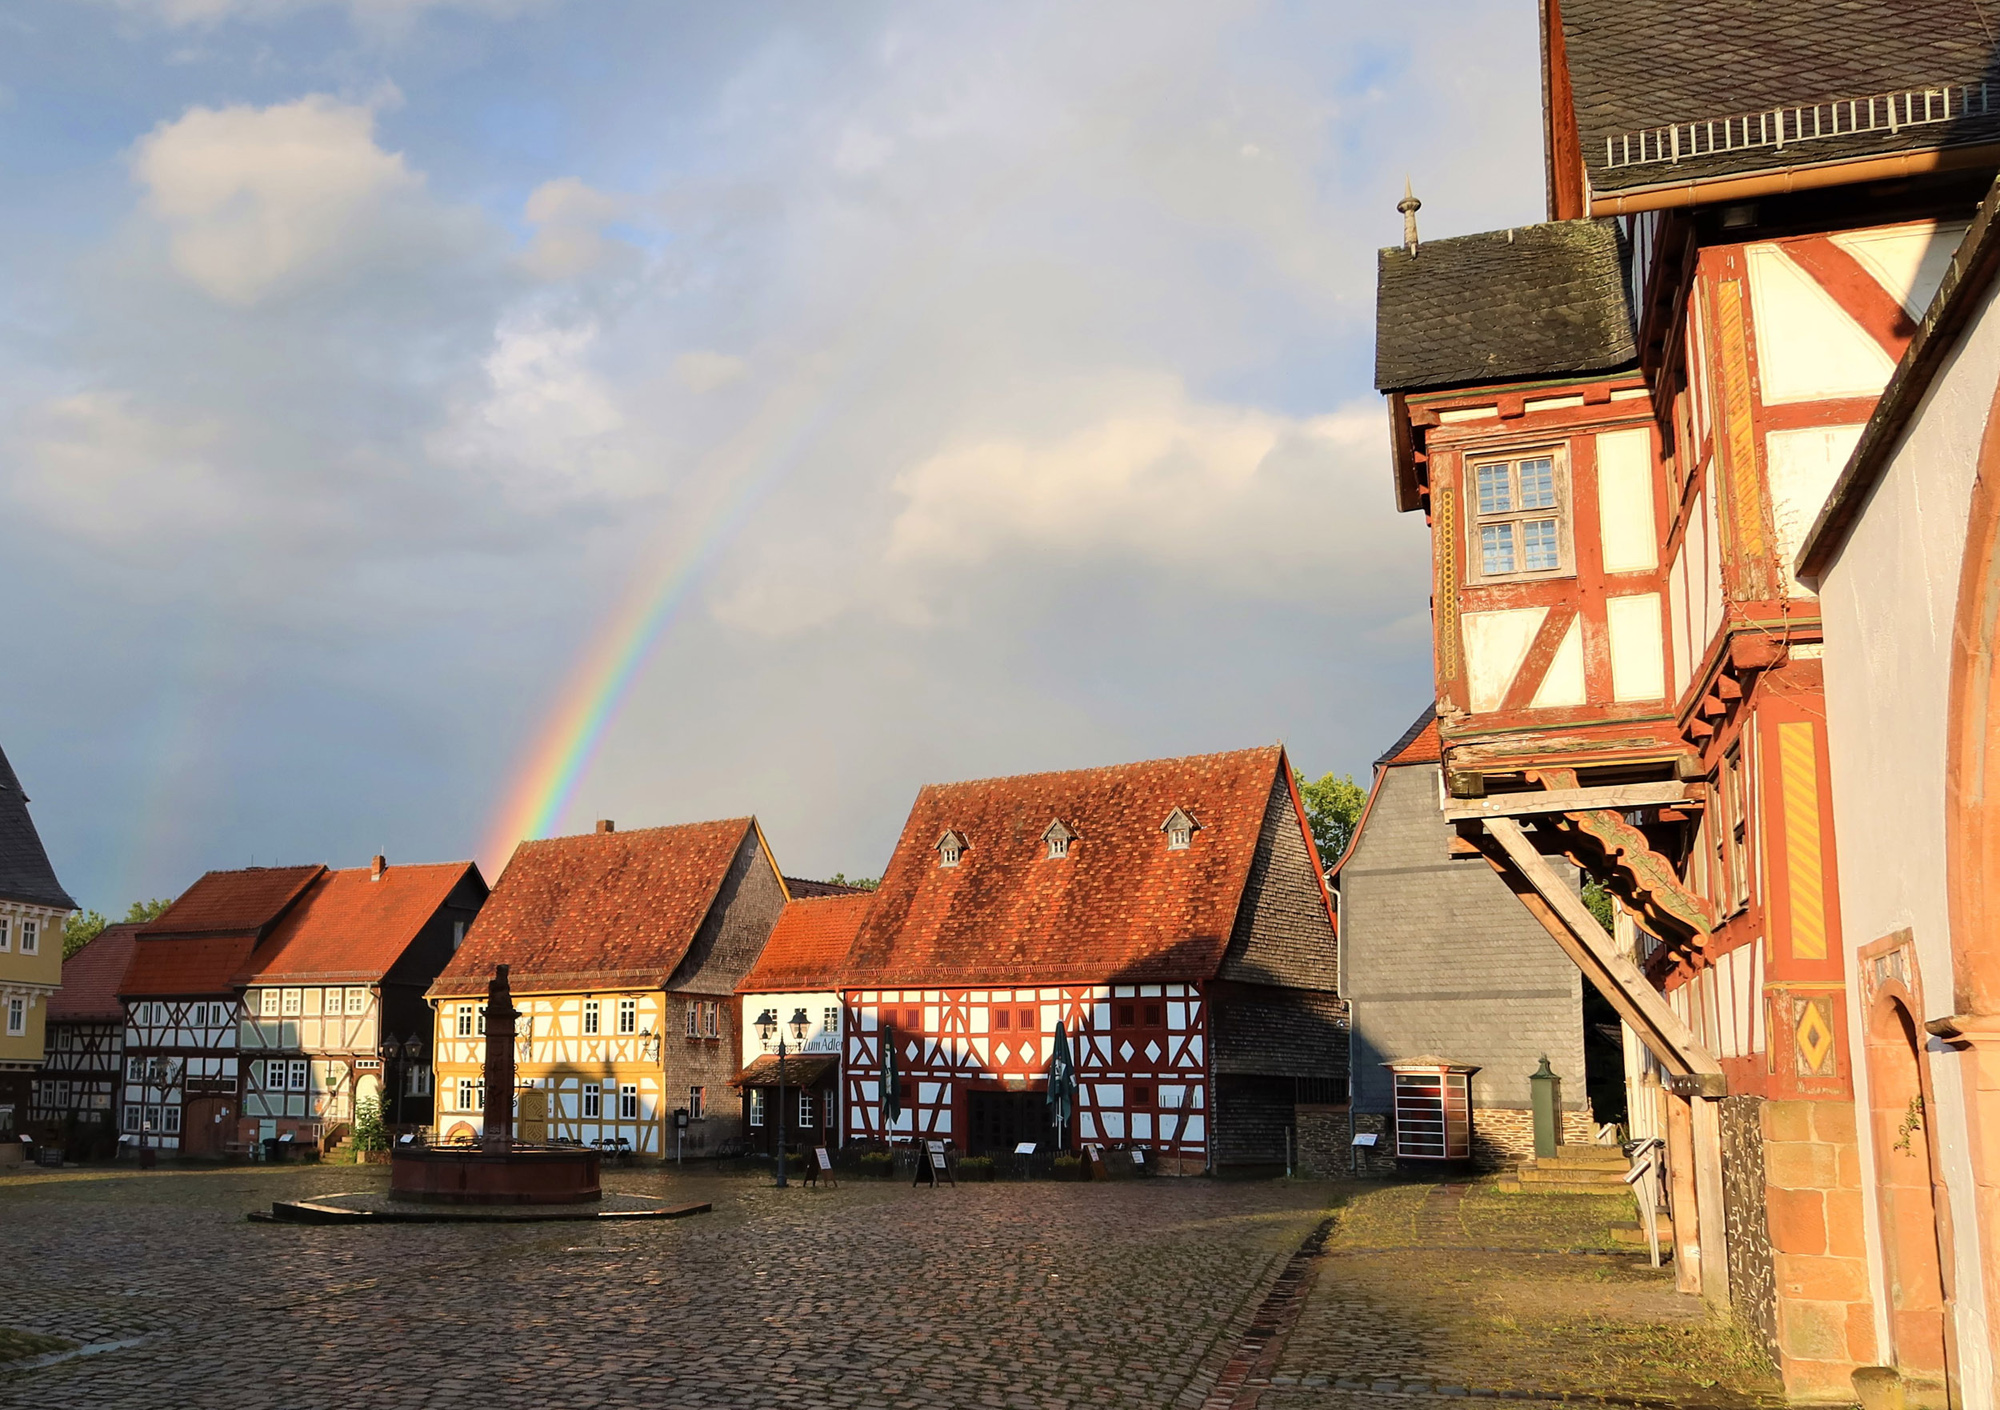 Regenbogen über dem Marktplatz des Freilichtmuseums, man blickt in Richtung des Wirtshauses